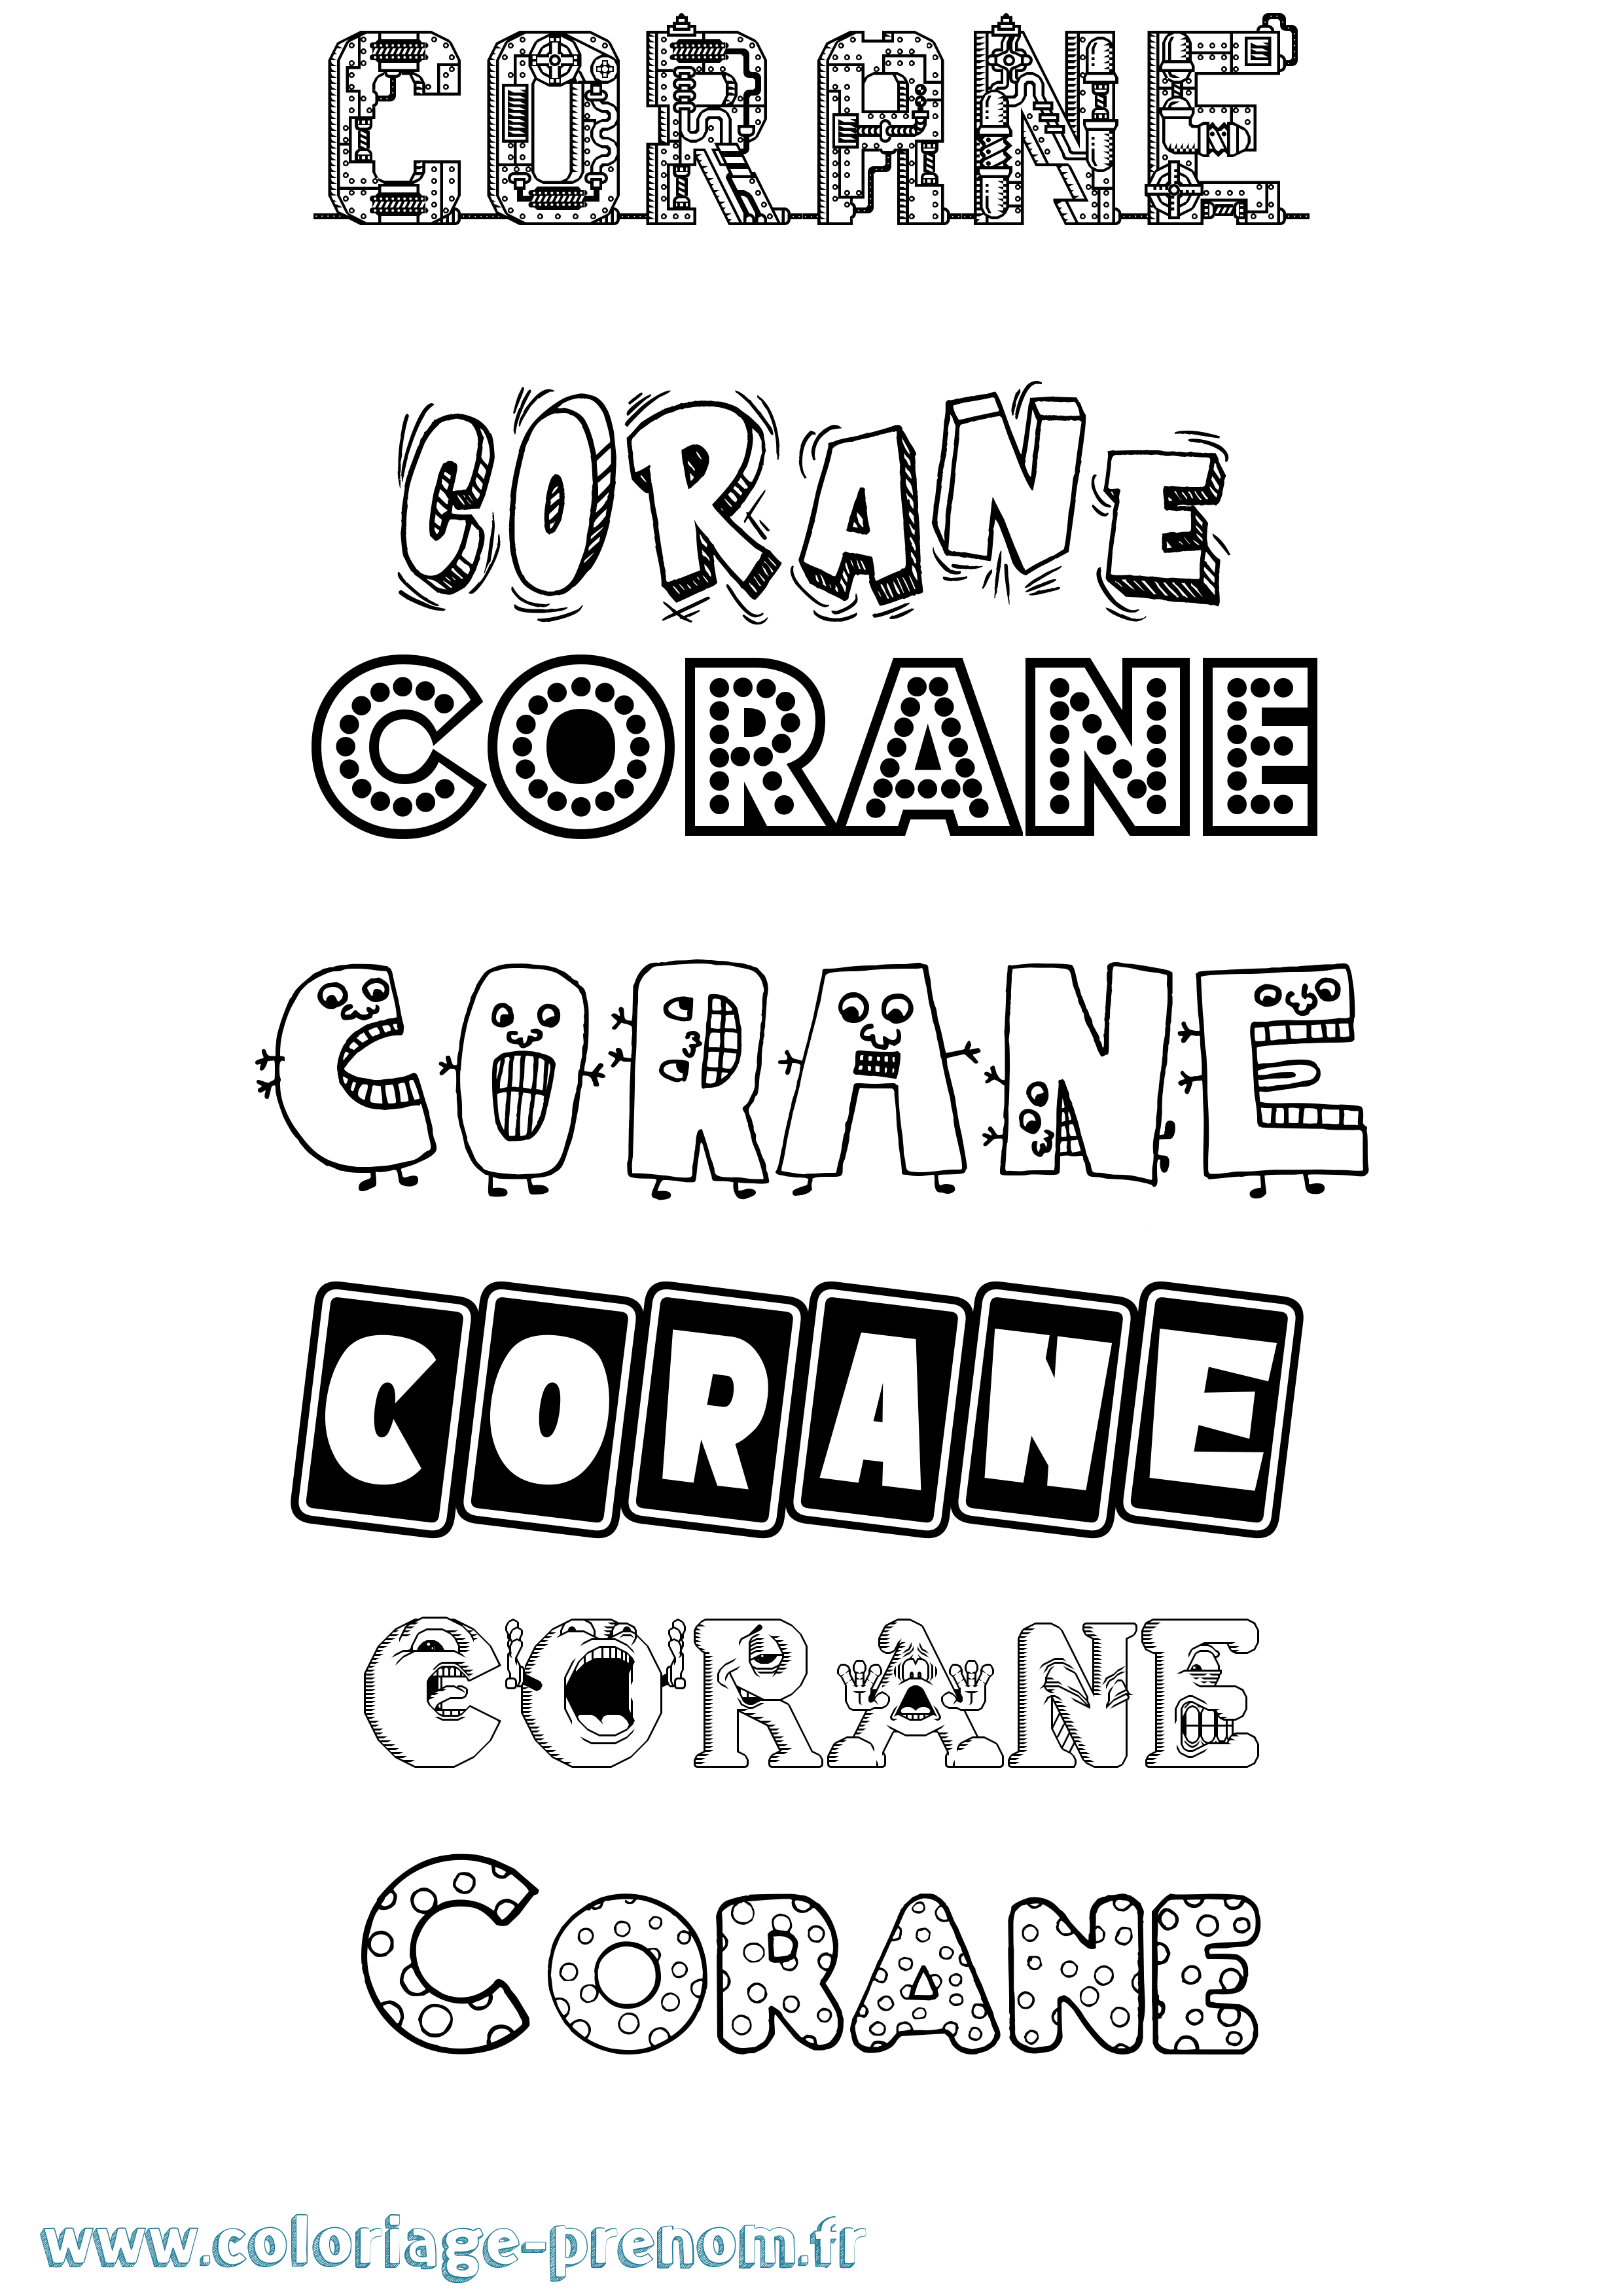 Coloriage prénom Corane Fun